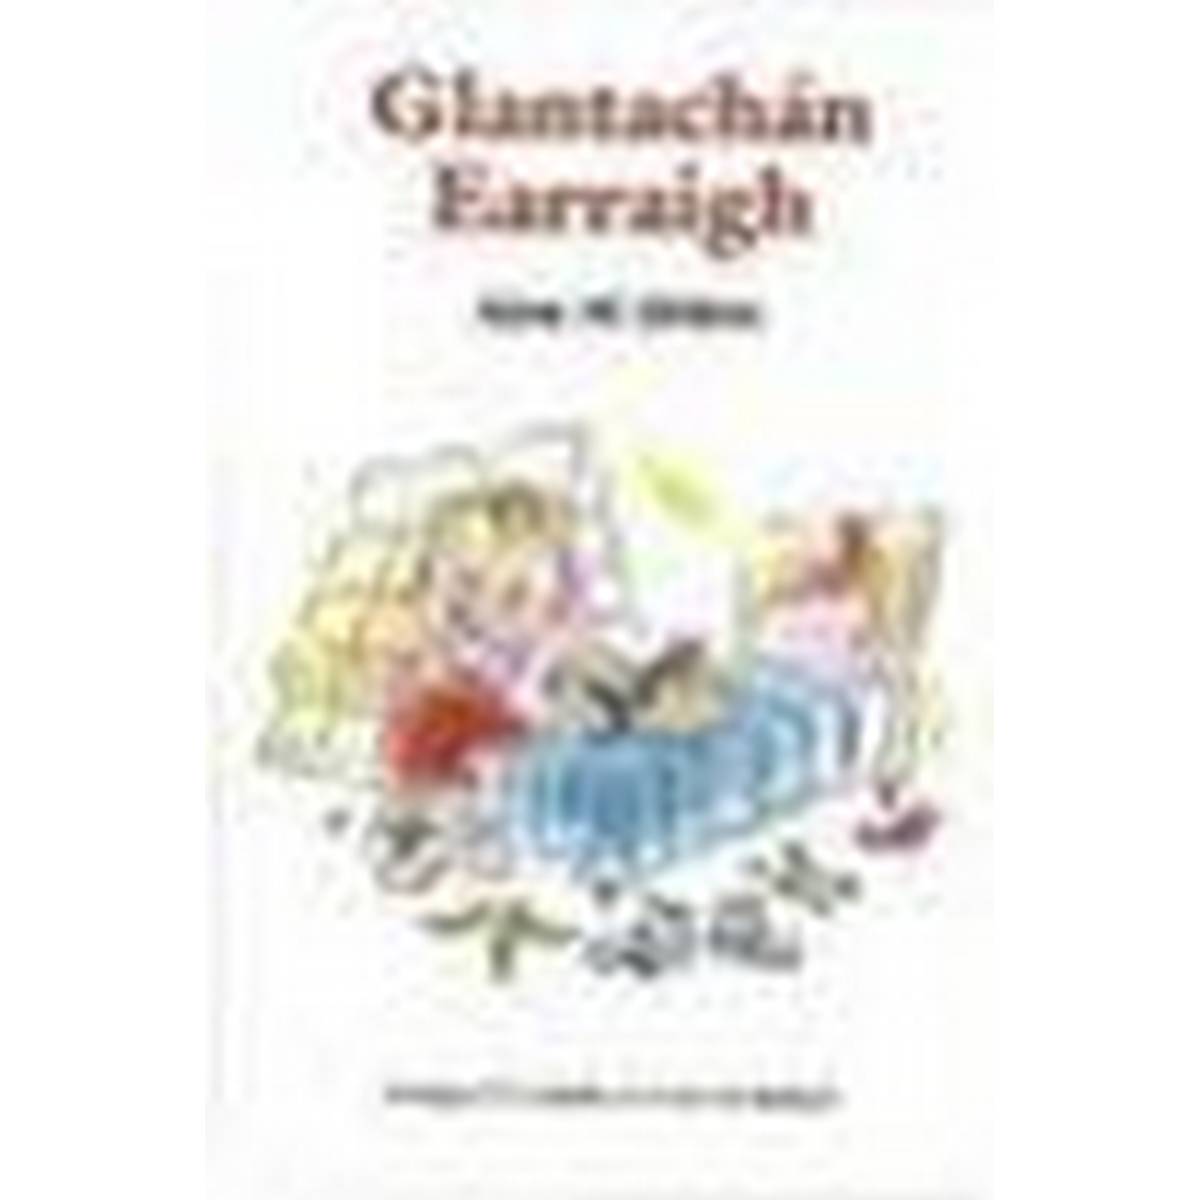 Glantachán Earraigh